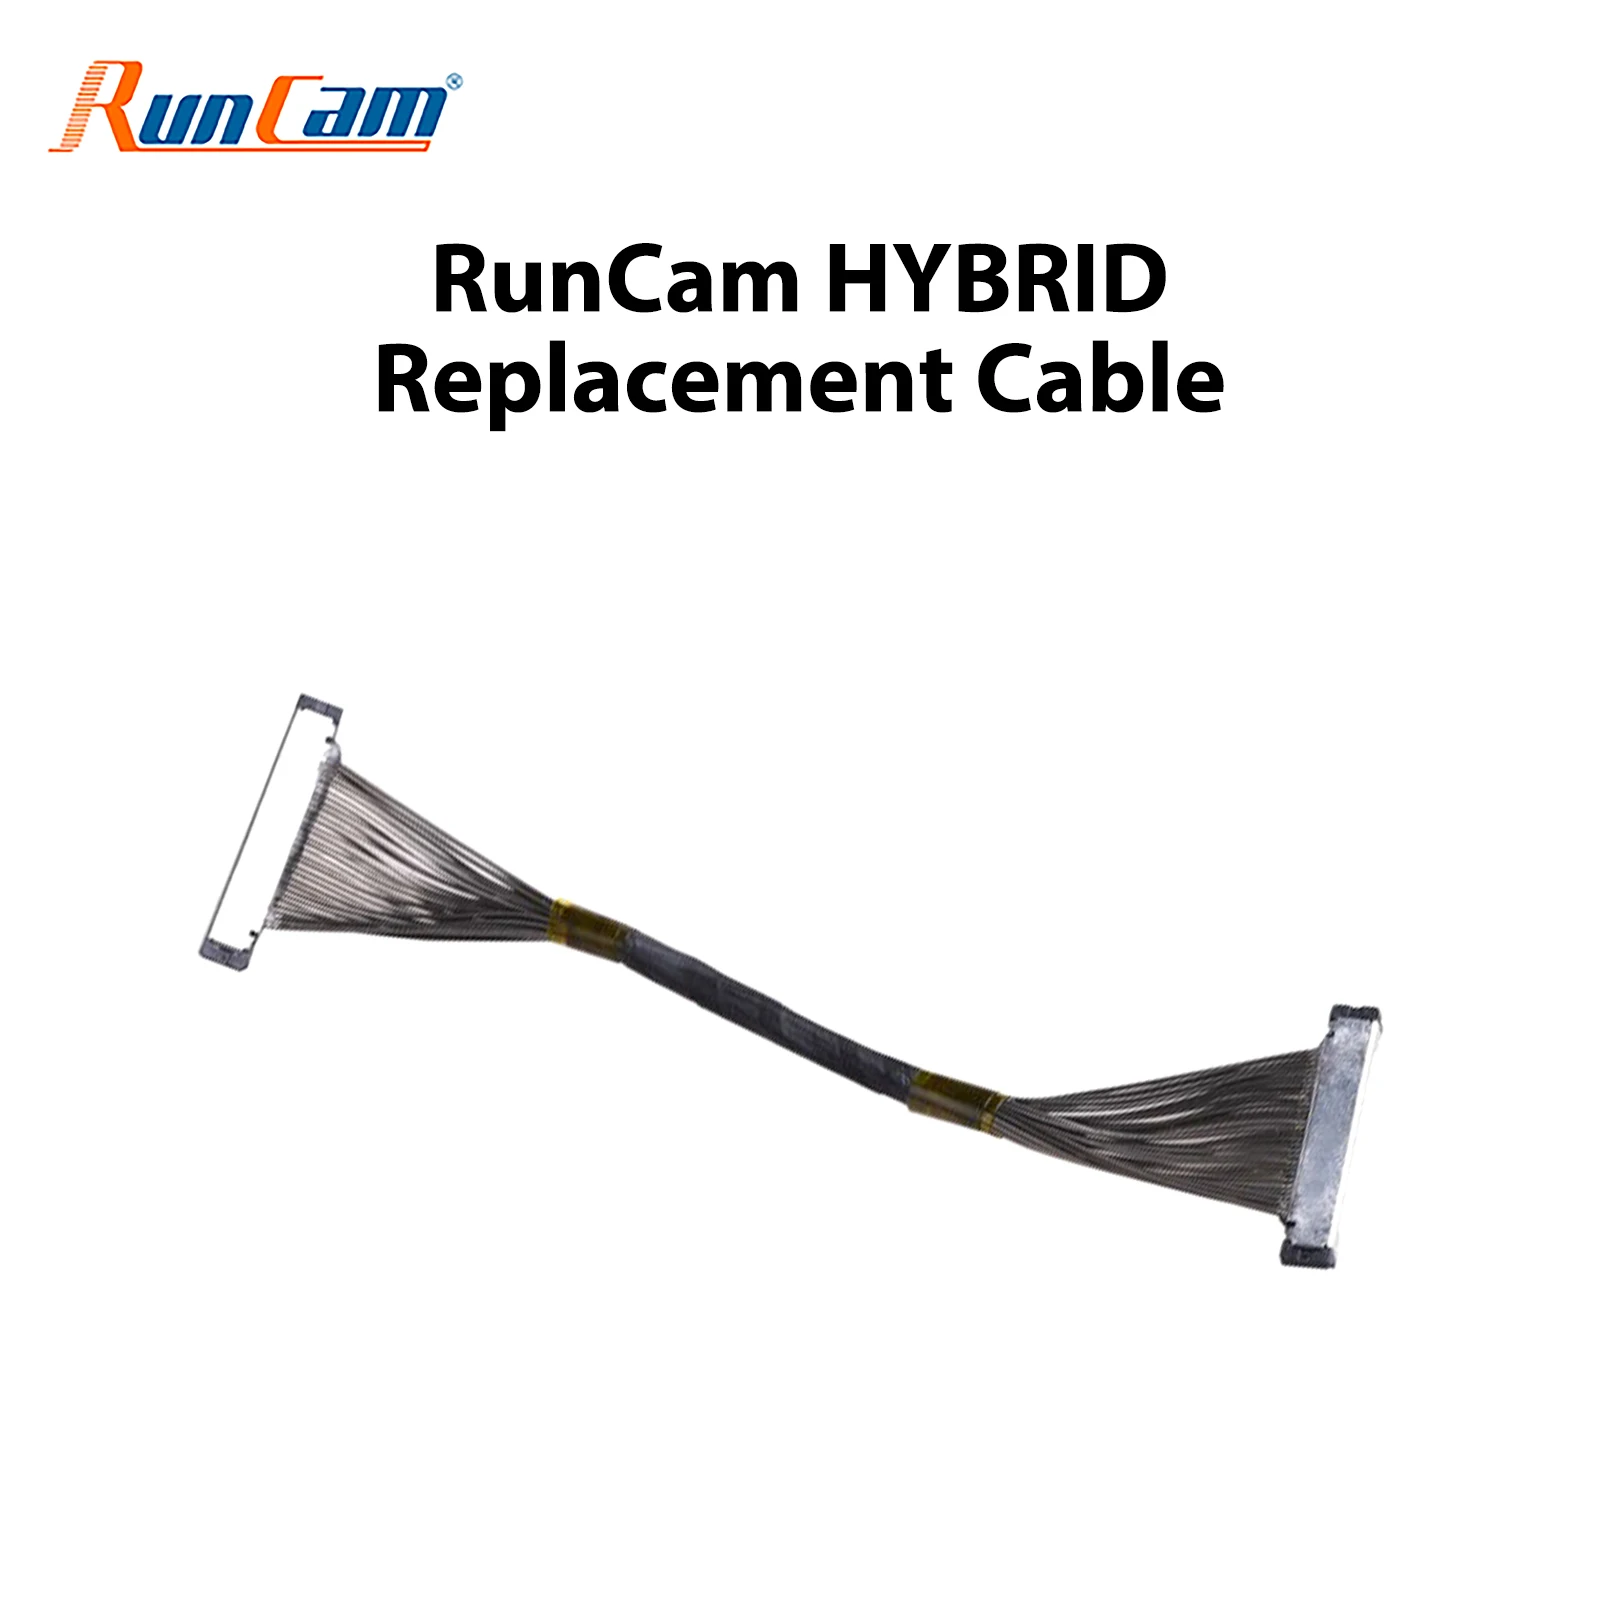 Cable for RunCam Hybrid